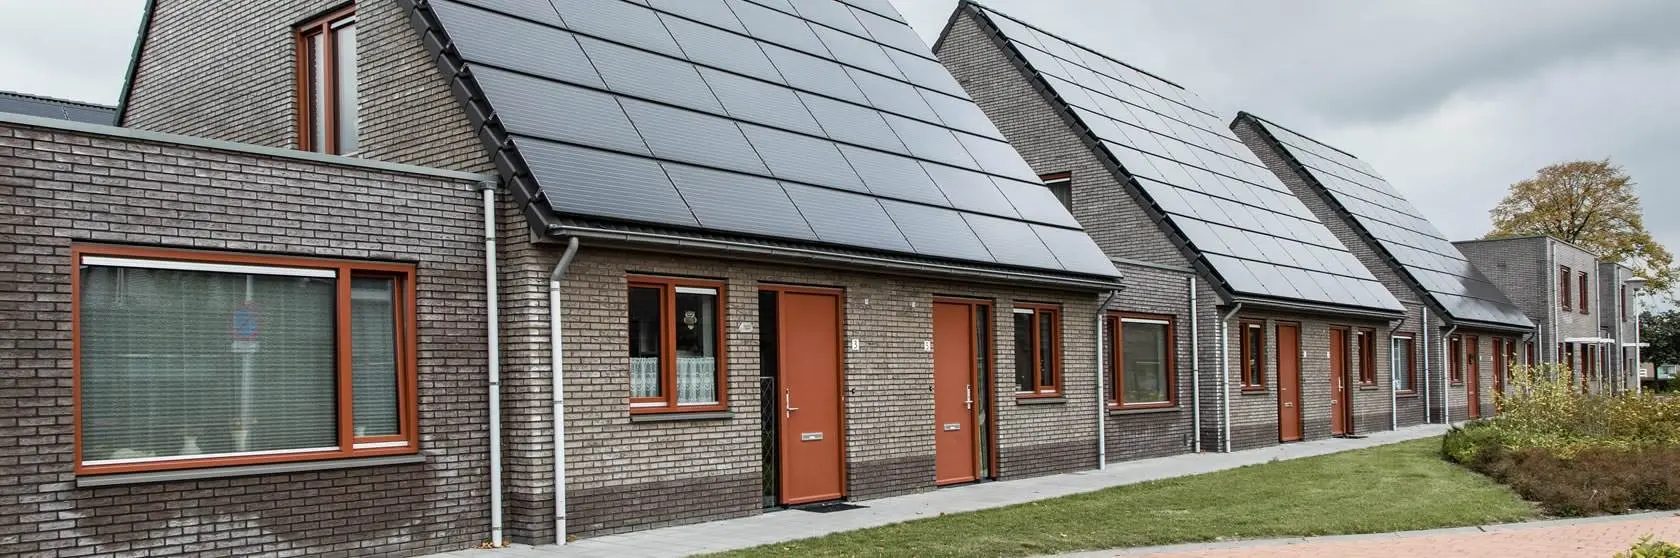 Duurzaamheidsconcepten van installatiebedrijf Mampaey actief in Honselersdijk en omgeving